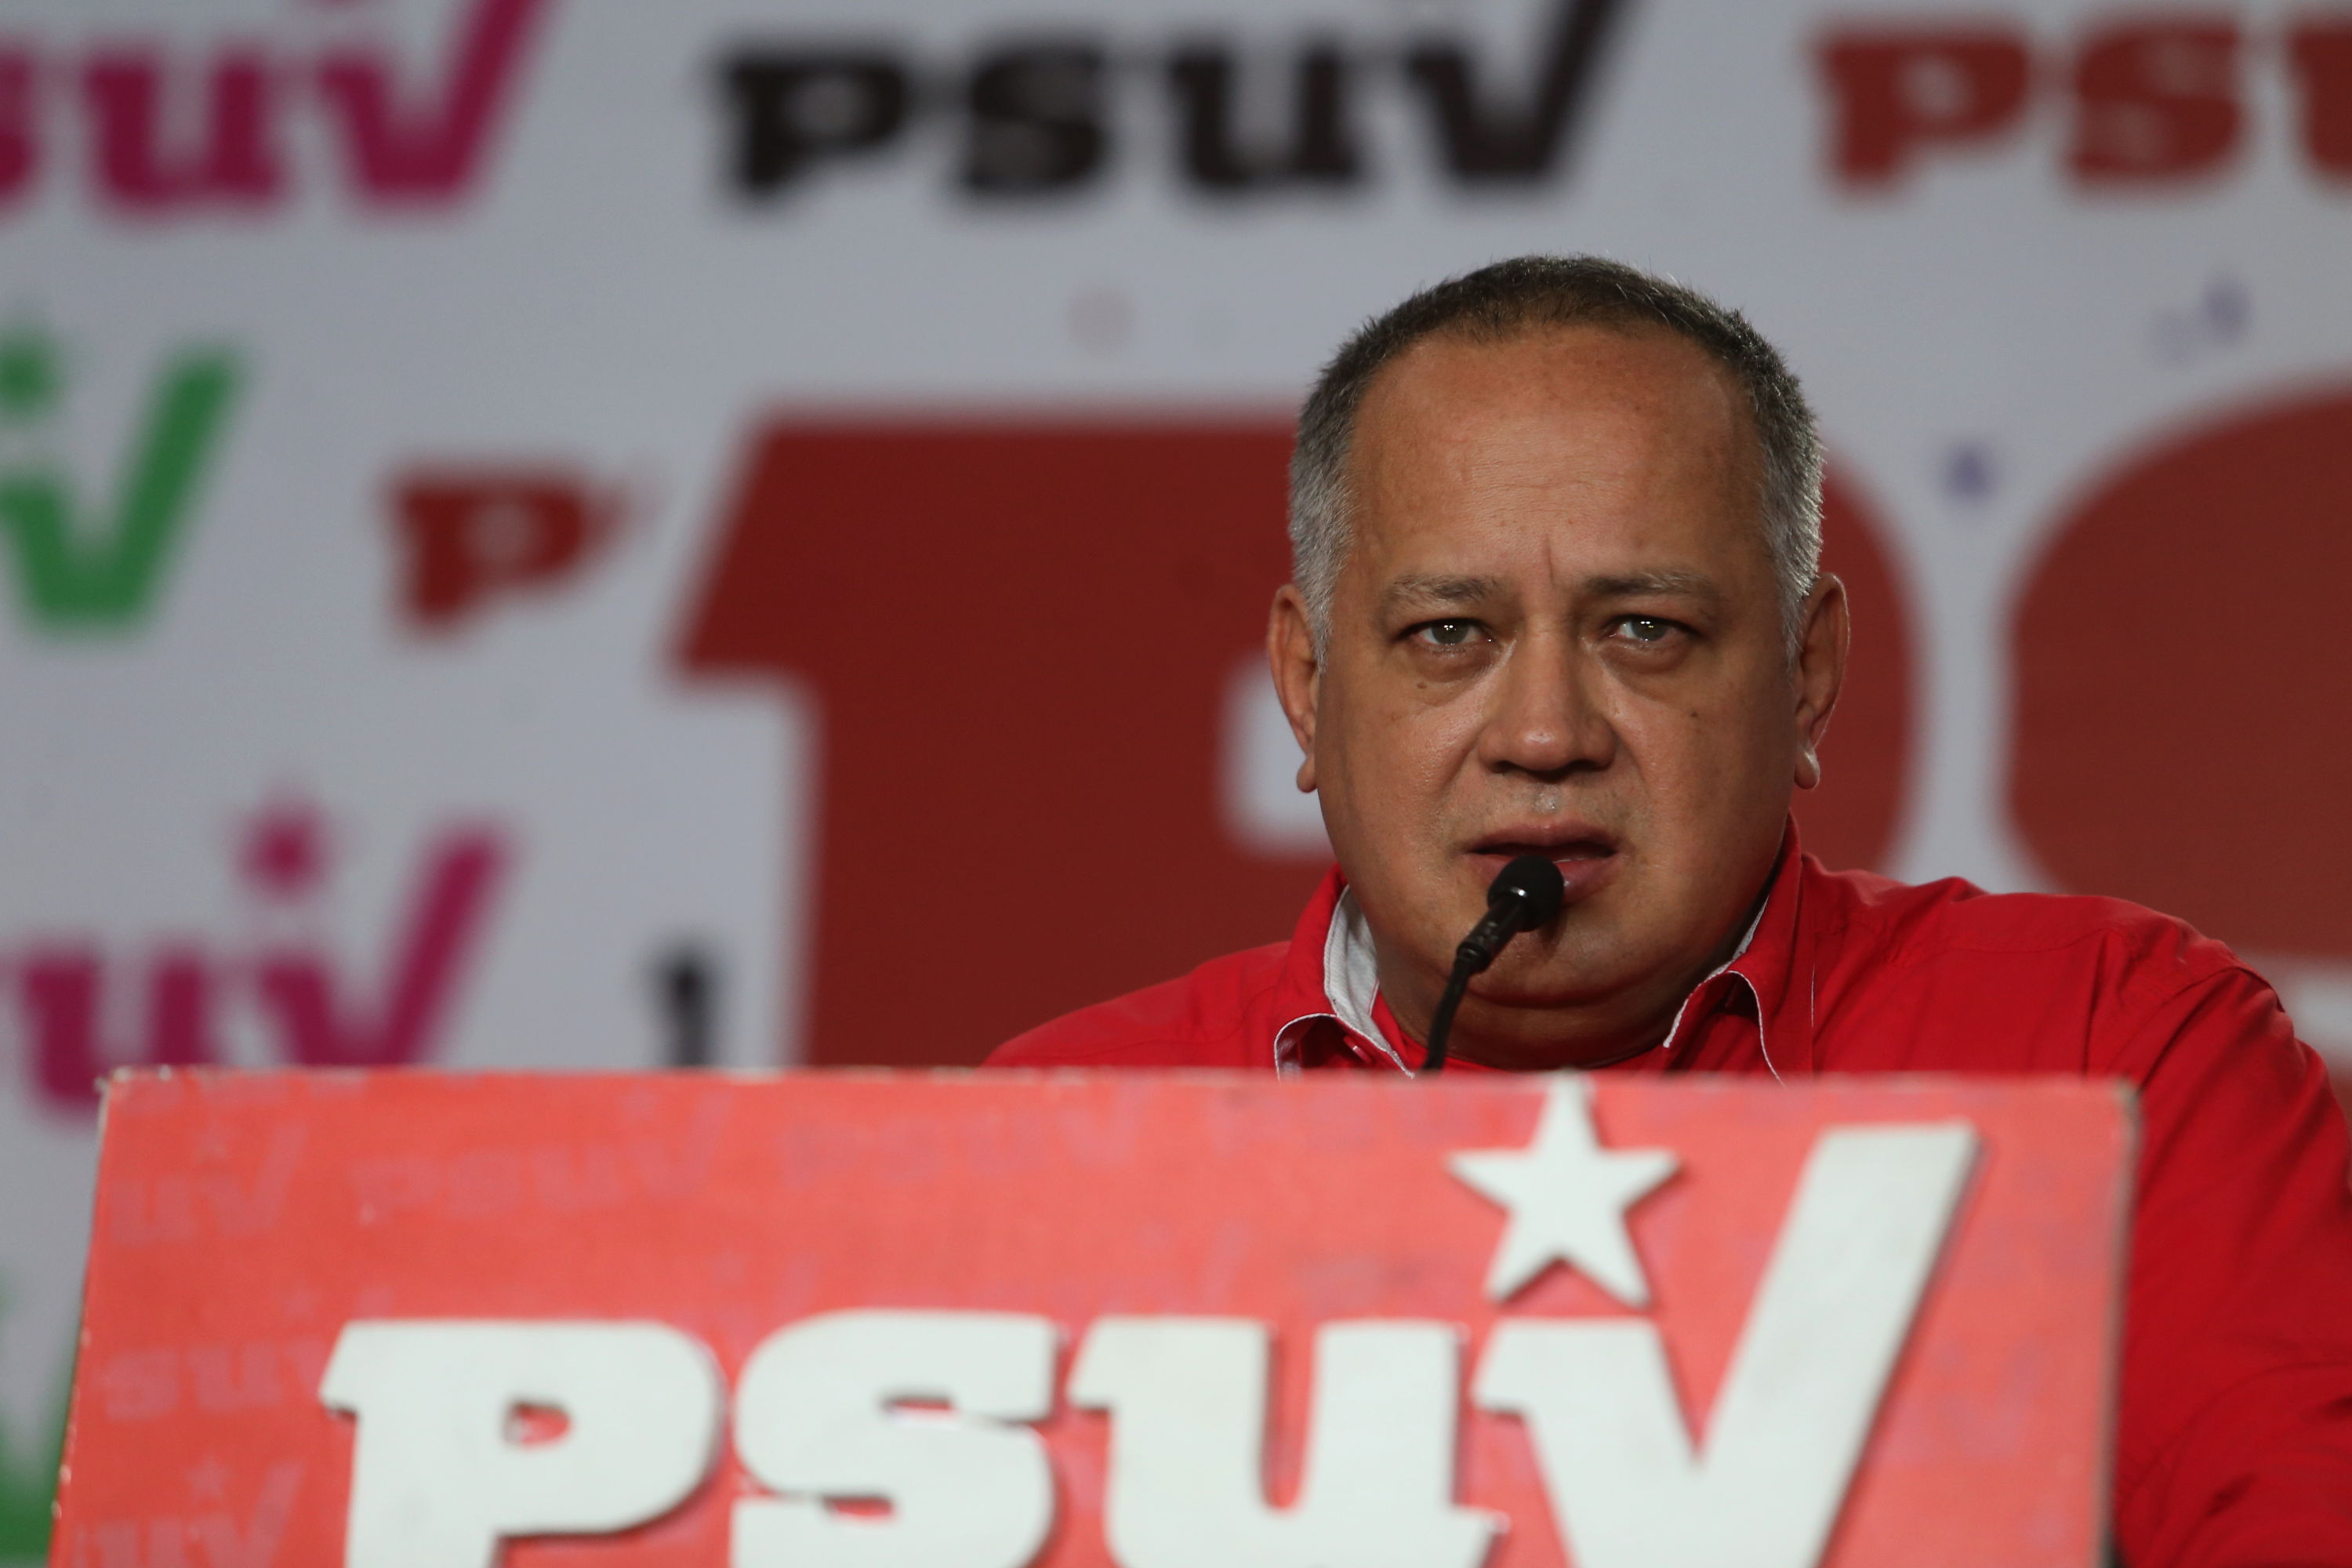 Lo que tiene que decir Diosdado Cabello sobre el mega apagón nacional #8Mar